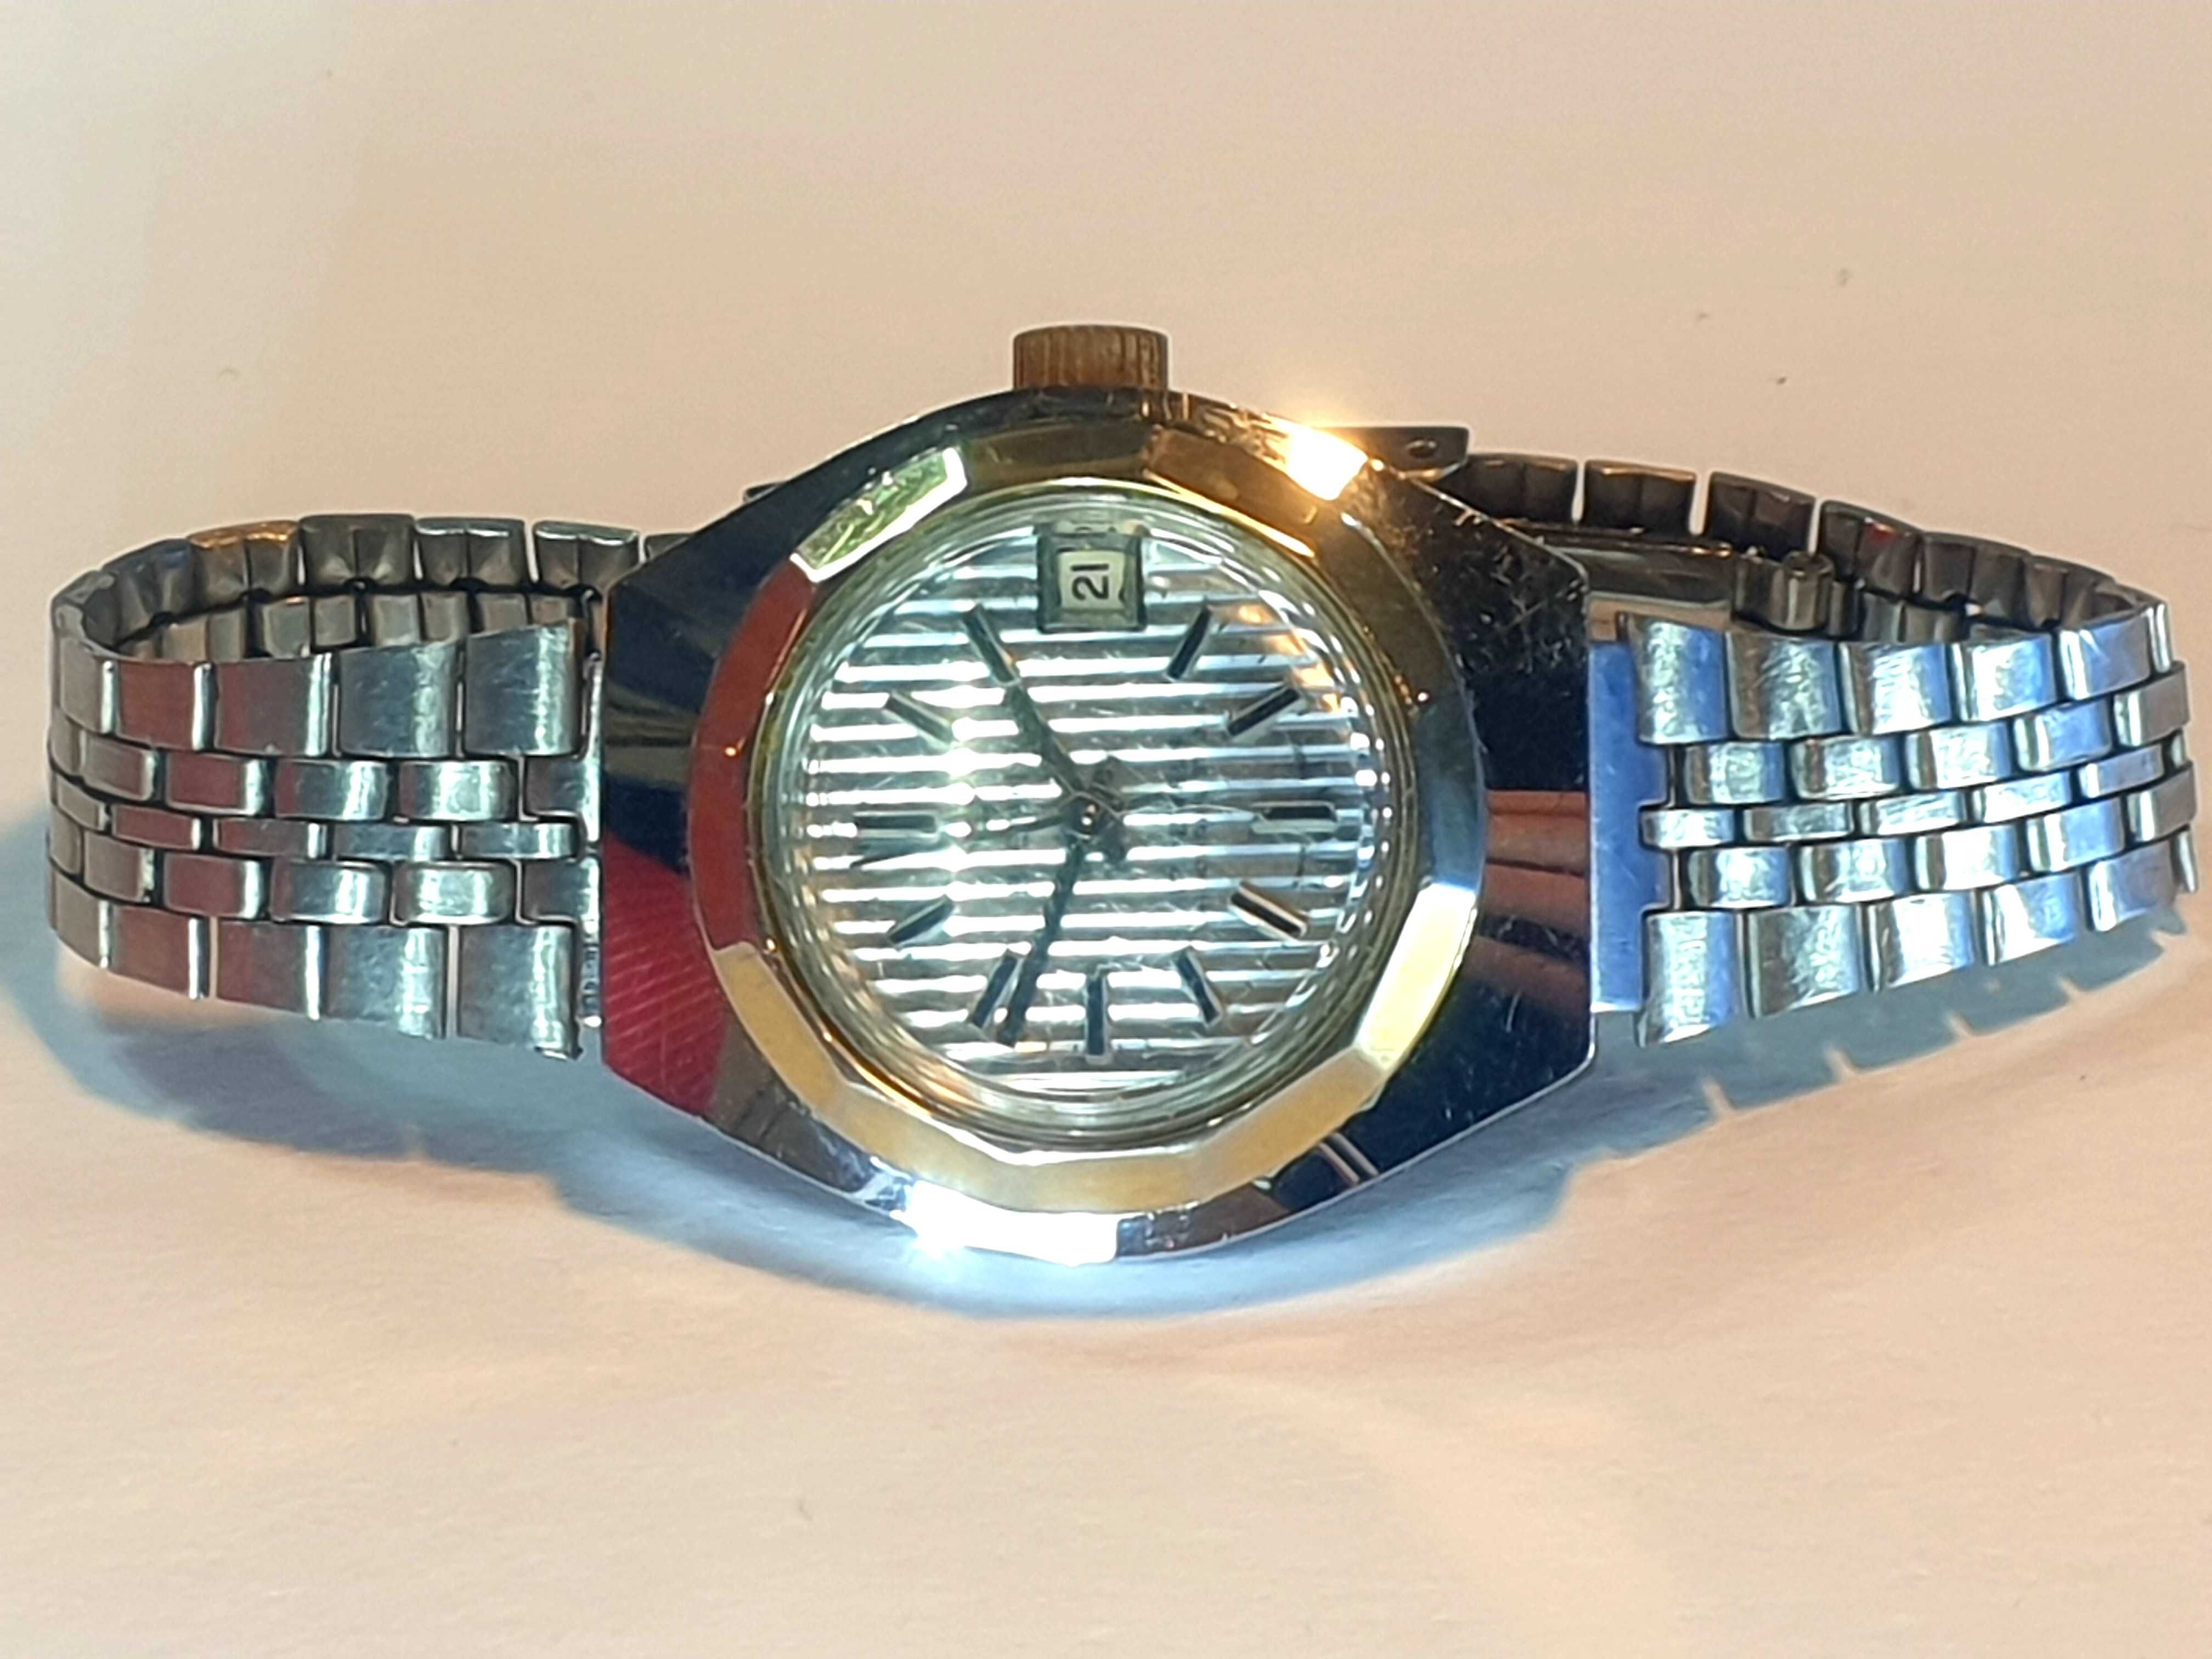 Damski zegarek mechaniczny BIENNE 17 jewels SWISS vintage